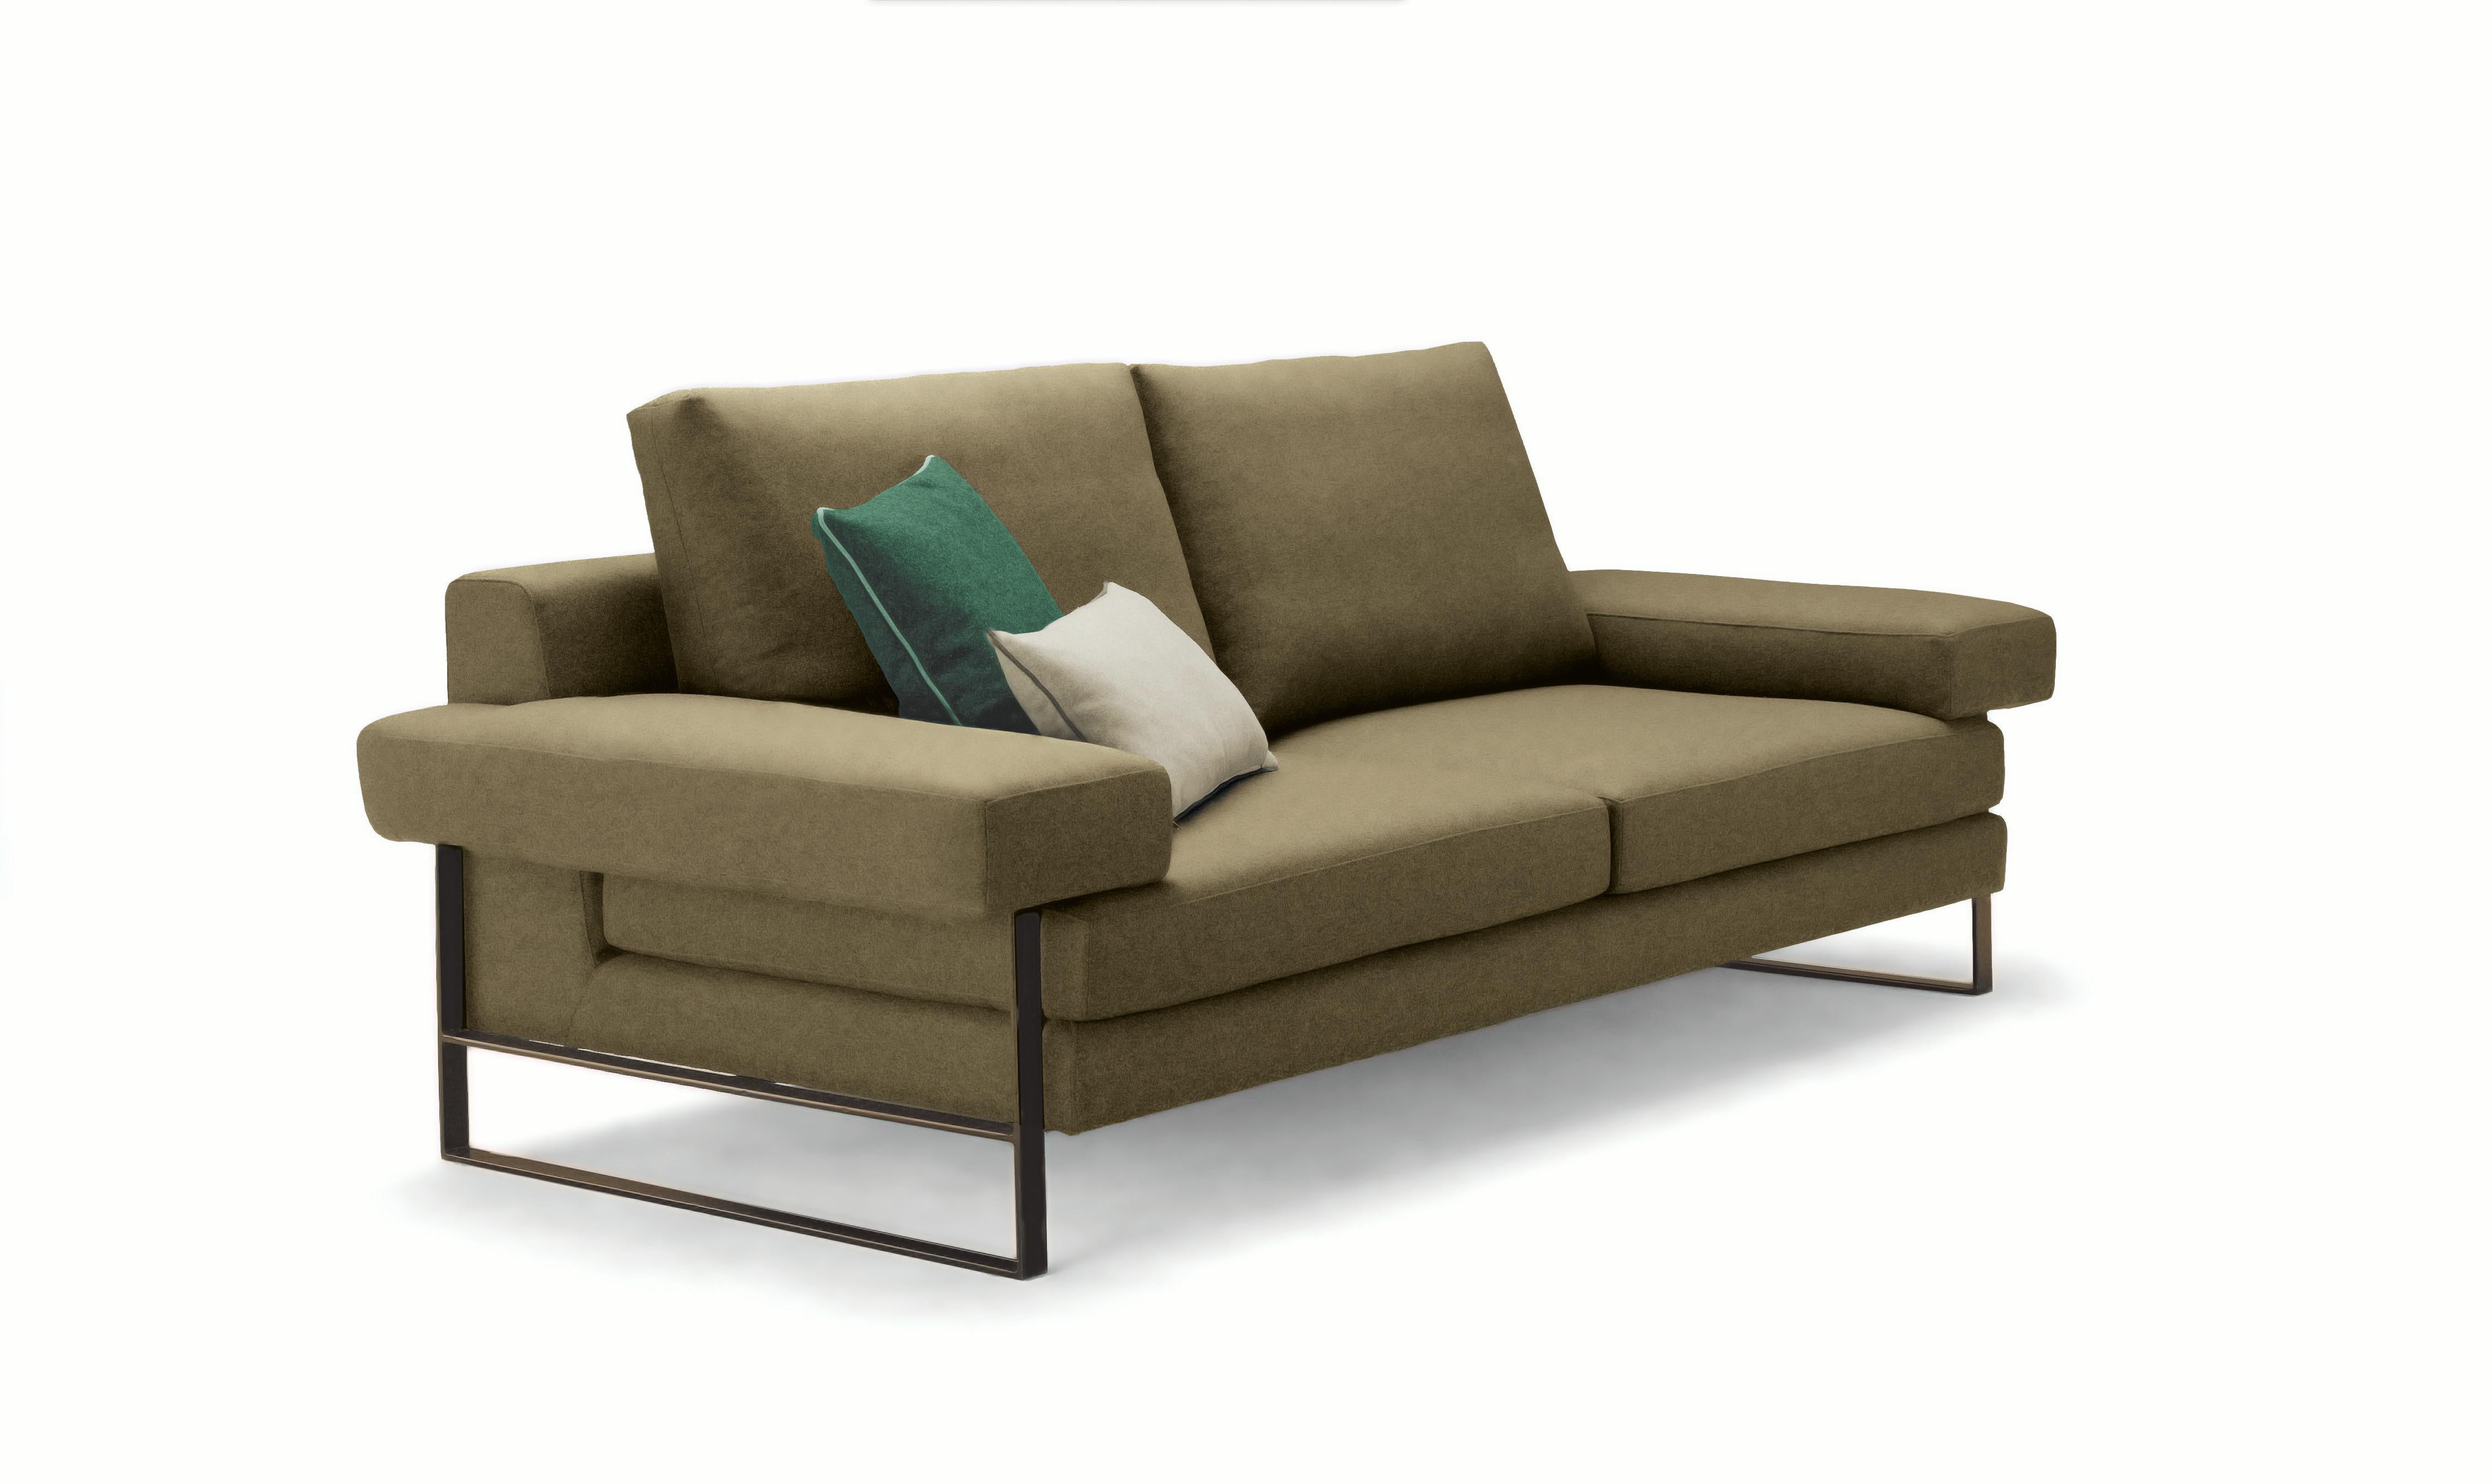 Parfaitement équilibré et incroyablement confortable, le canapé Kuadra jouera un rôle très important dans votre salon. Le revêtement en velours haute performance repose sur une structure en métal laqué noir. Les coussins décoratifs figurant sur les